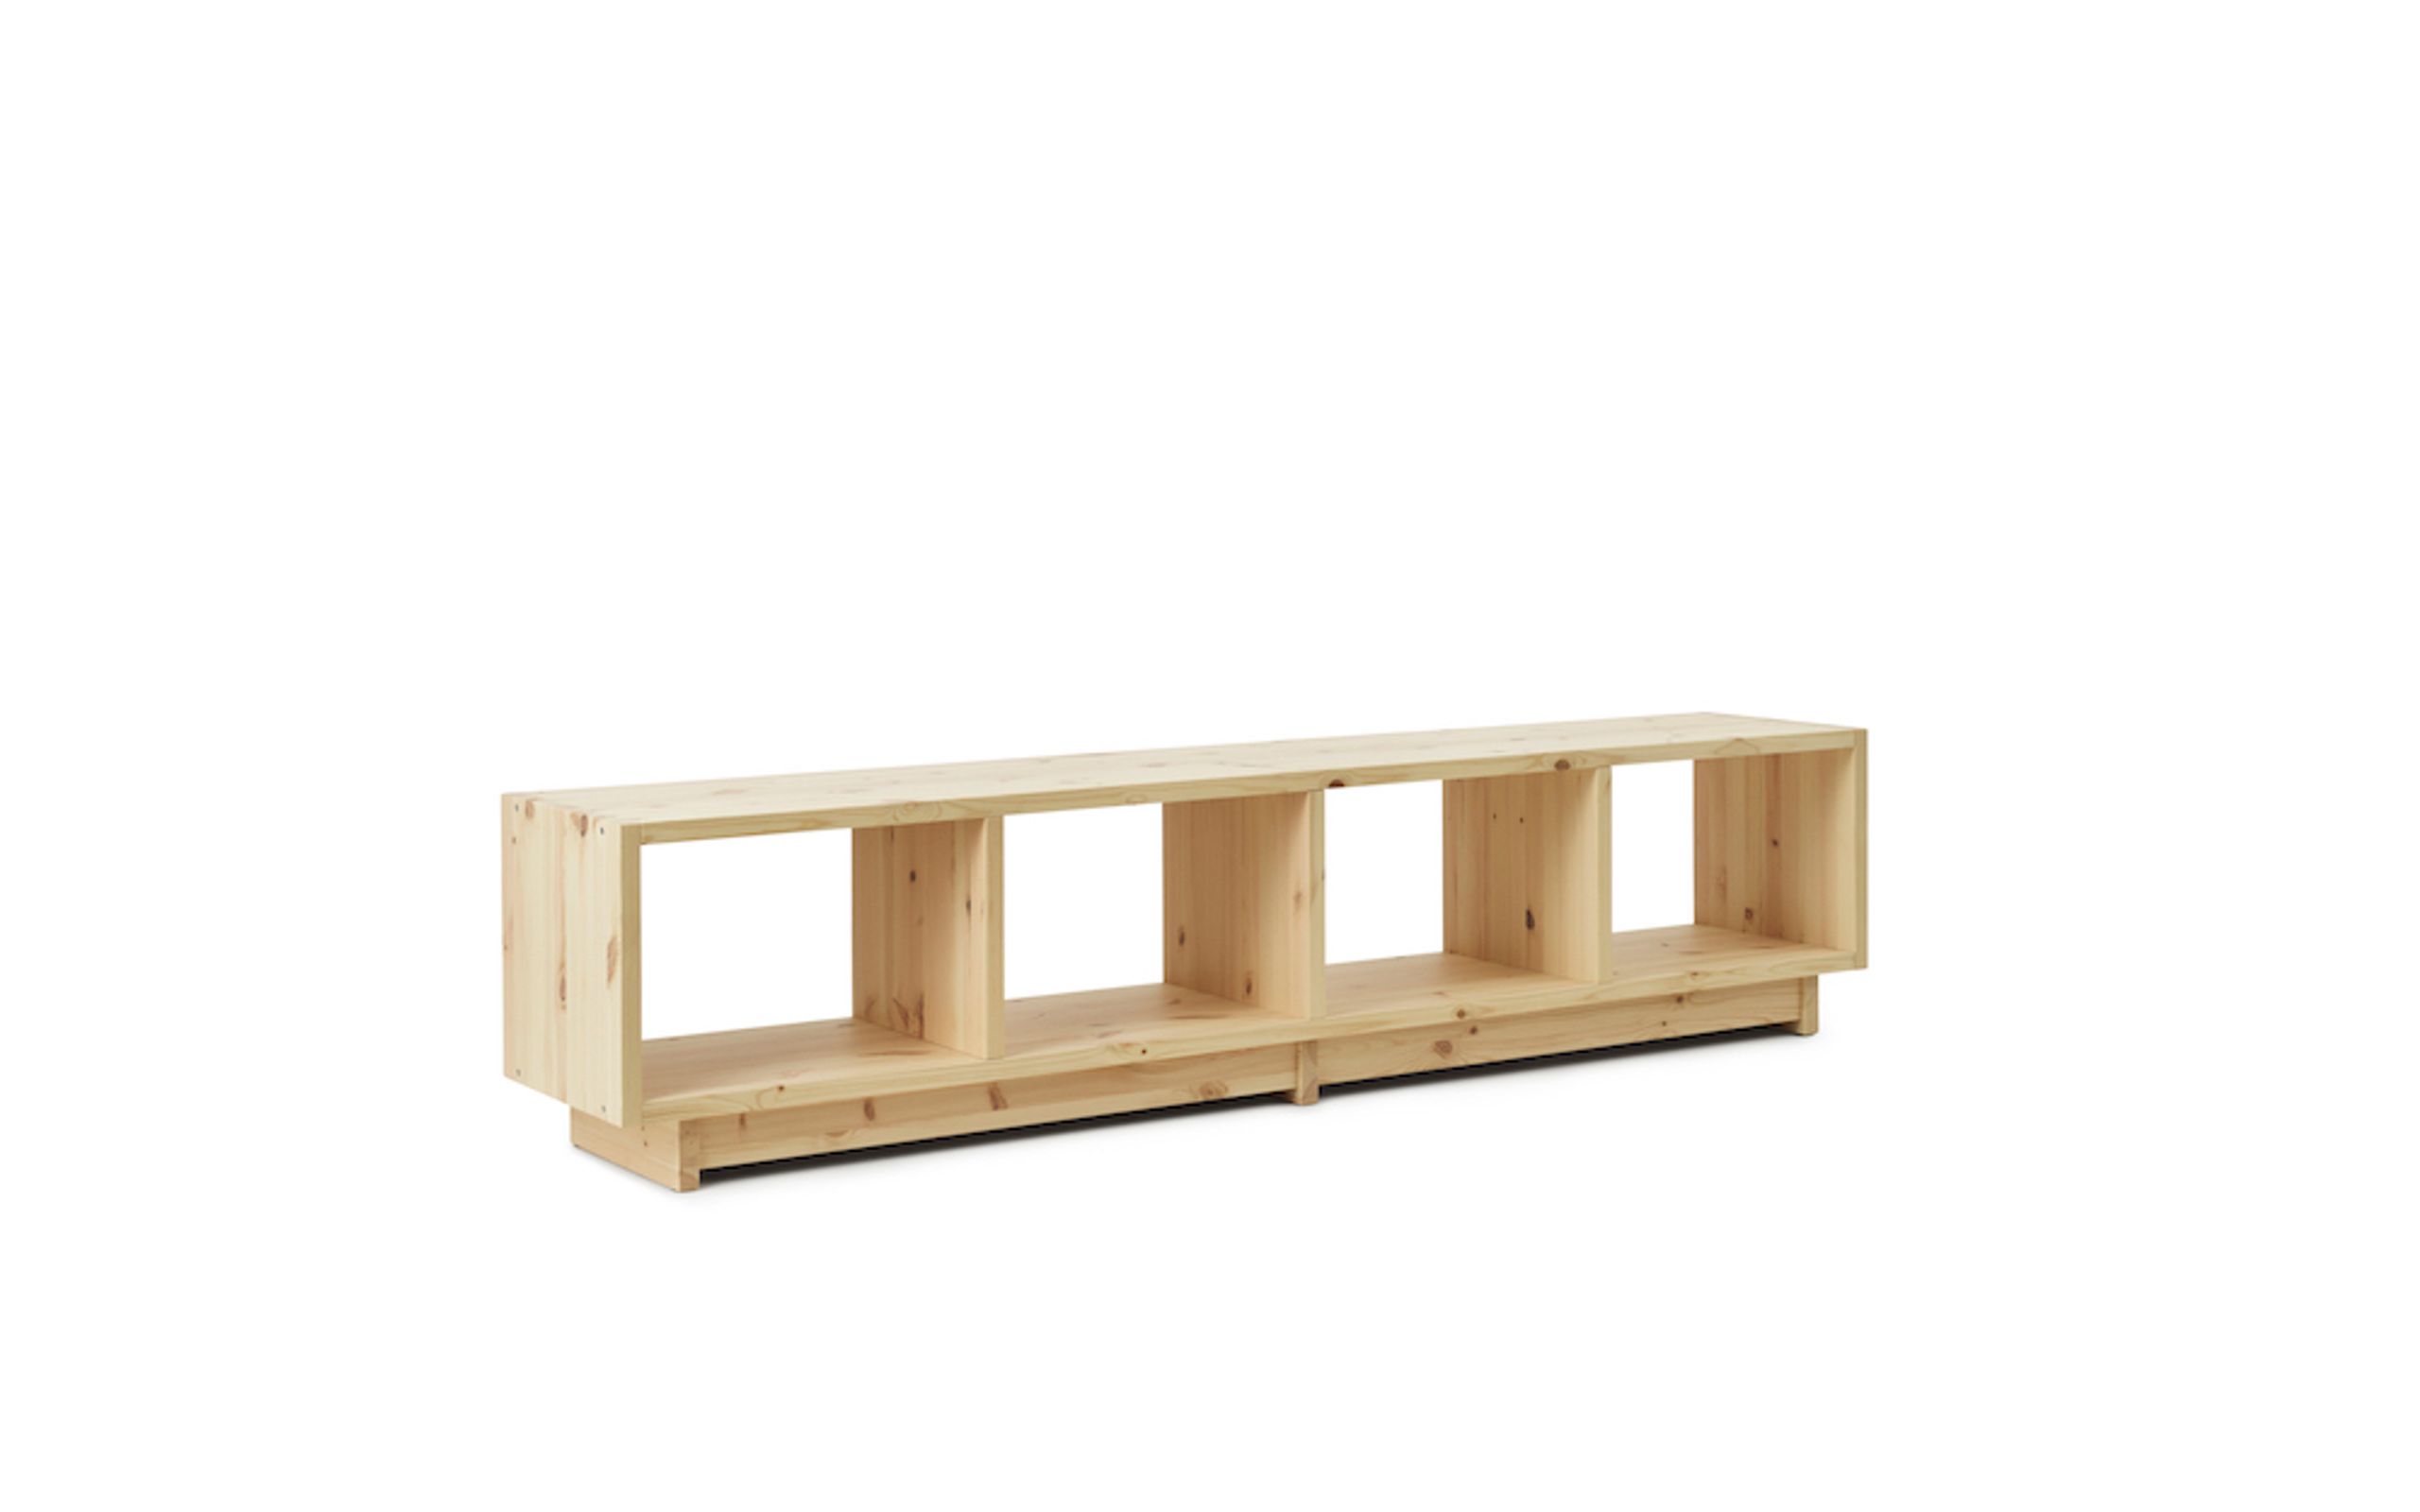 Normann Copenhagen - Estante - Plank Bookcase Low - Pine - Low